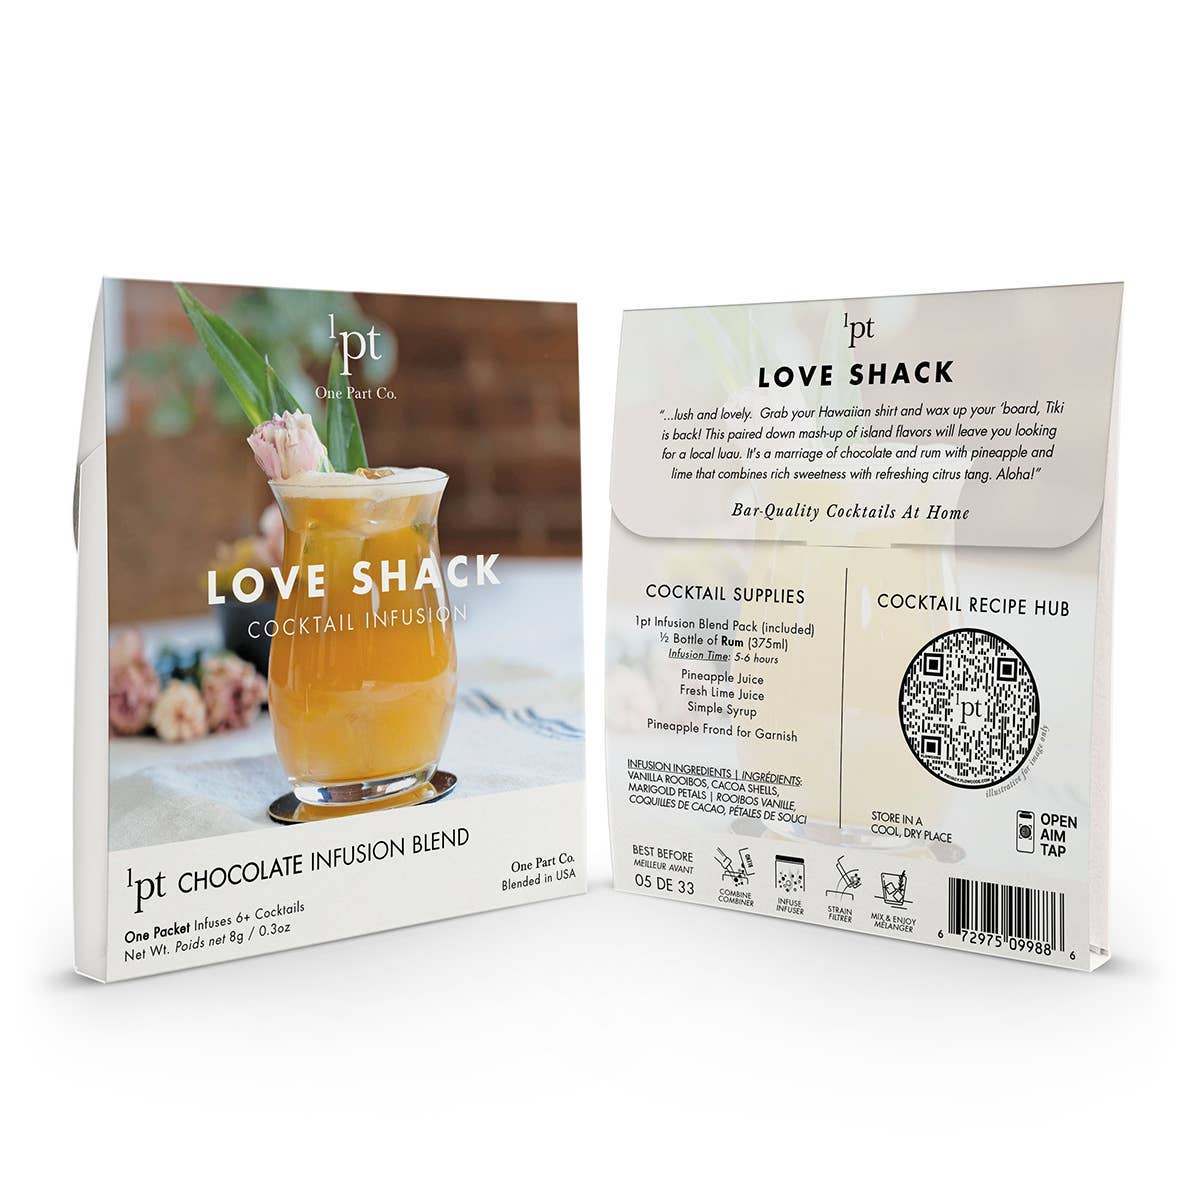 1pt Love Shack Cocktail Pack